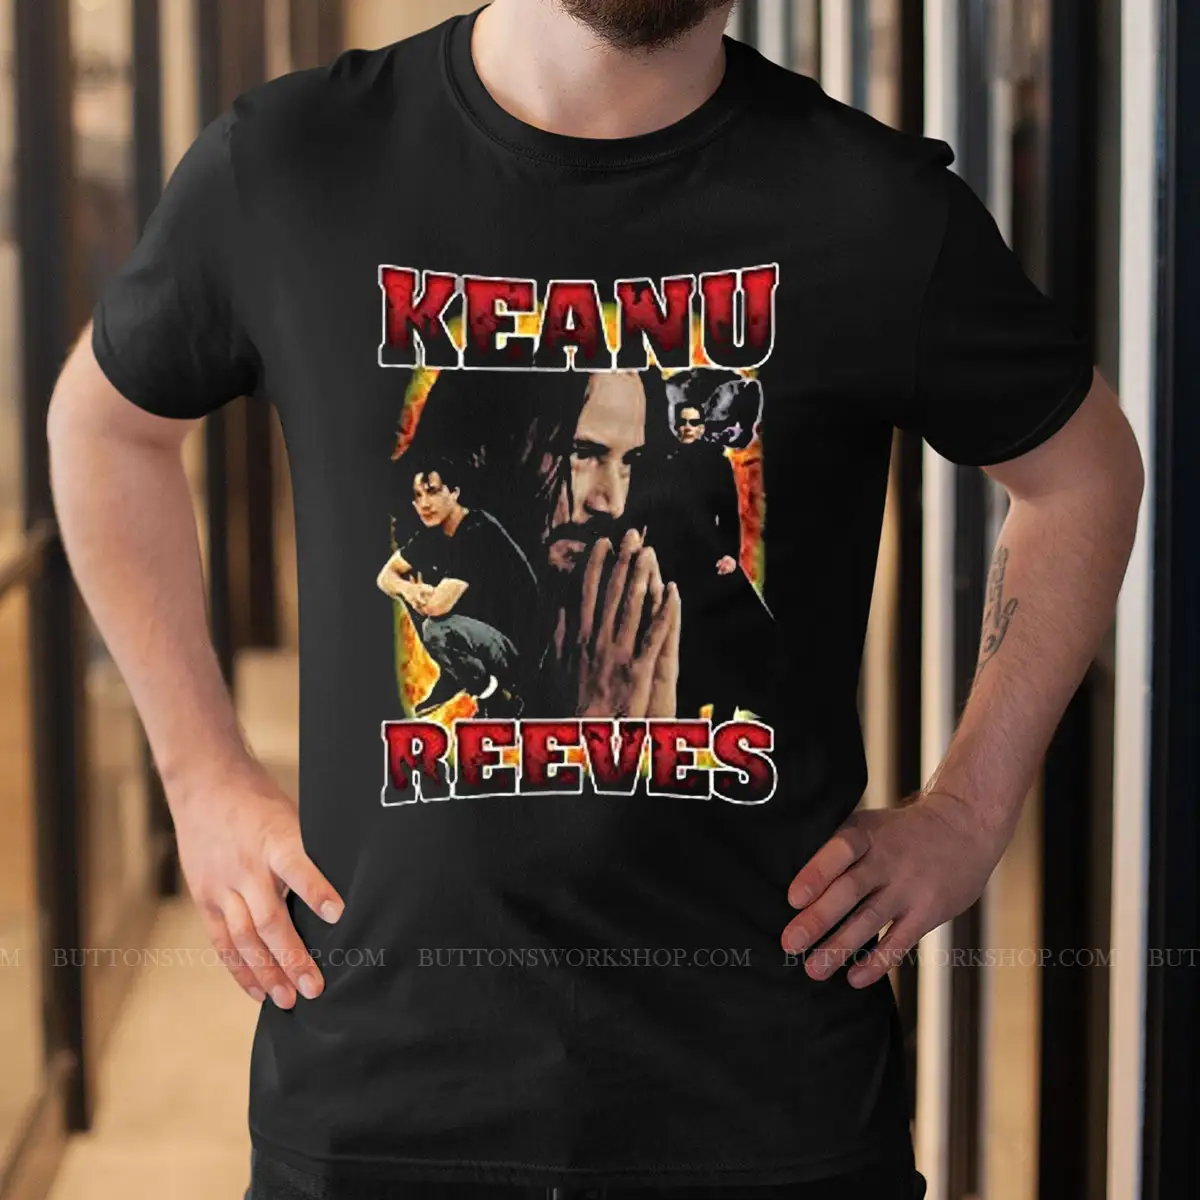 Keanu Reeves Shirt Unisex Tshirt